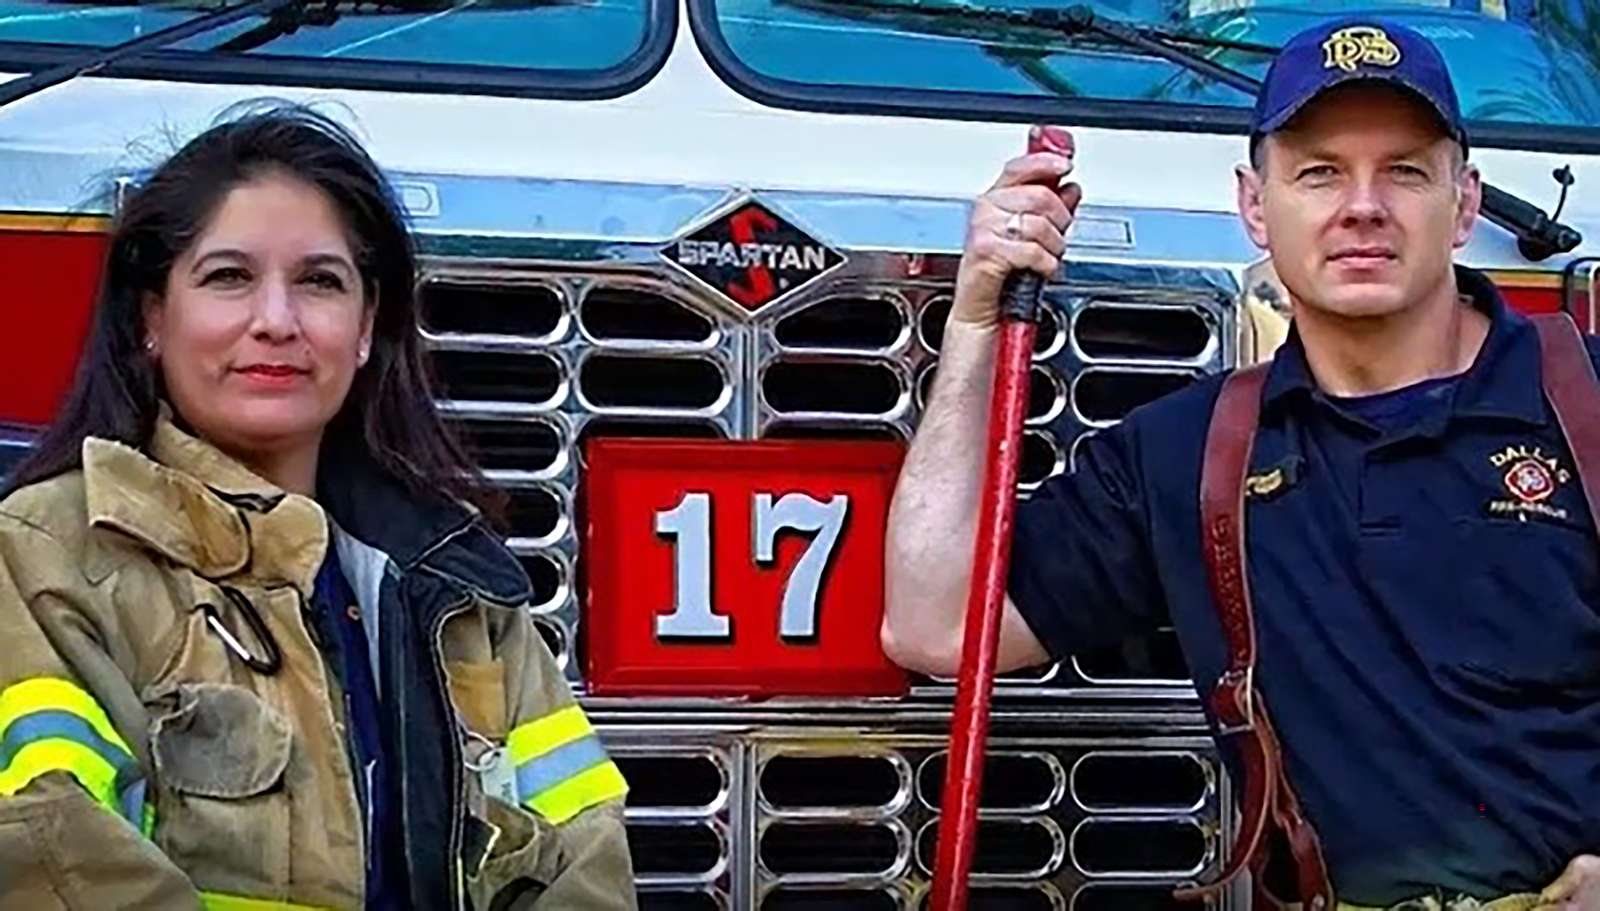 Liz el bombero puzzle online a partir de foto